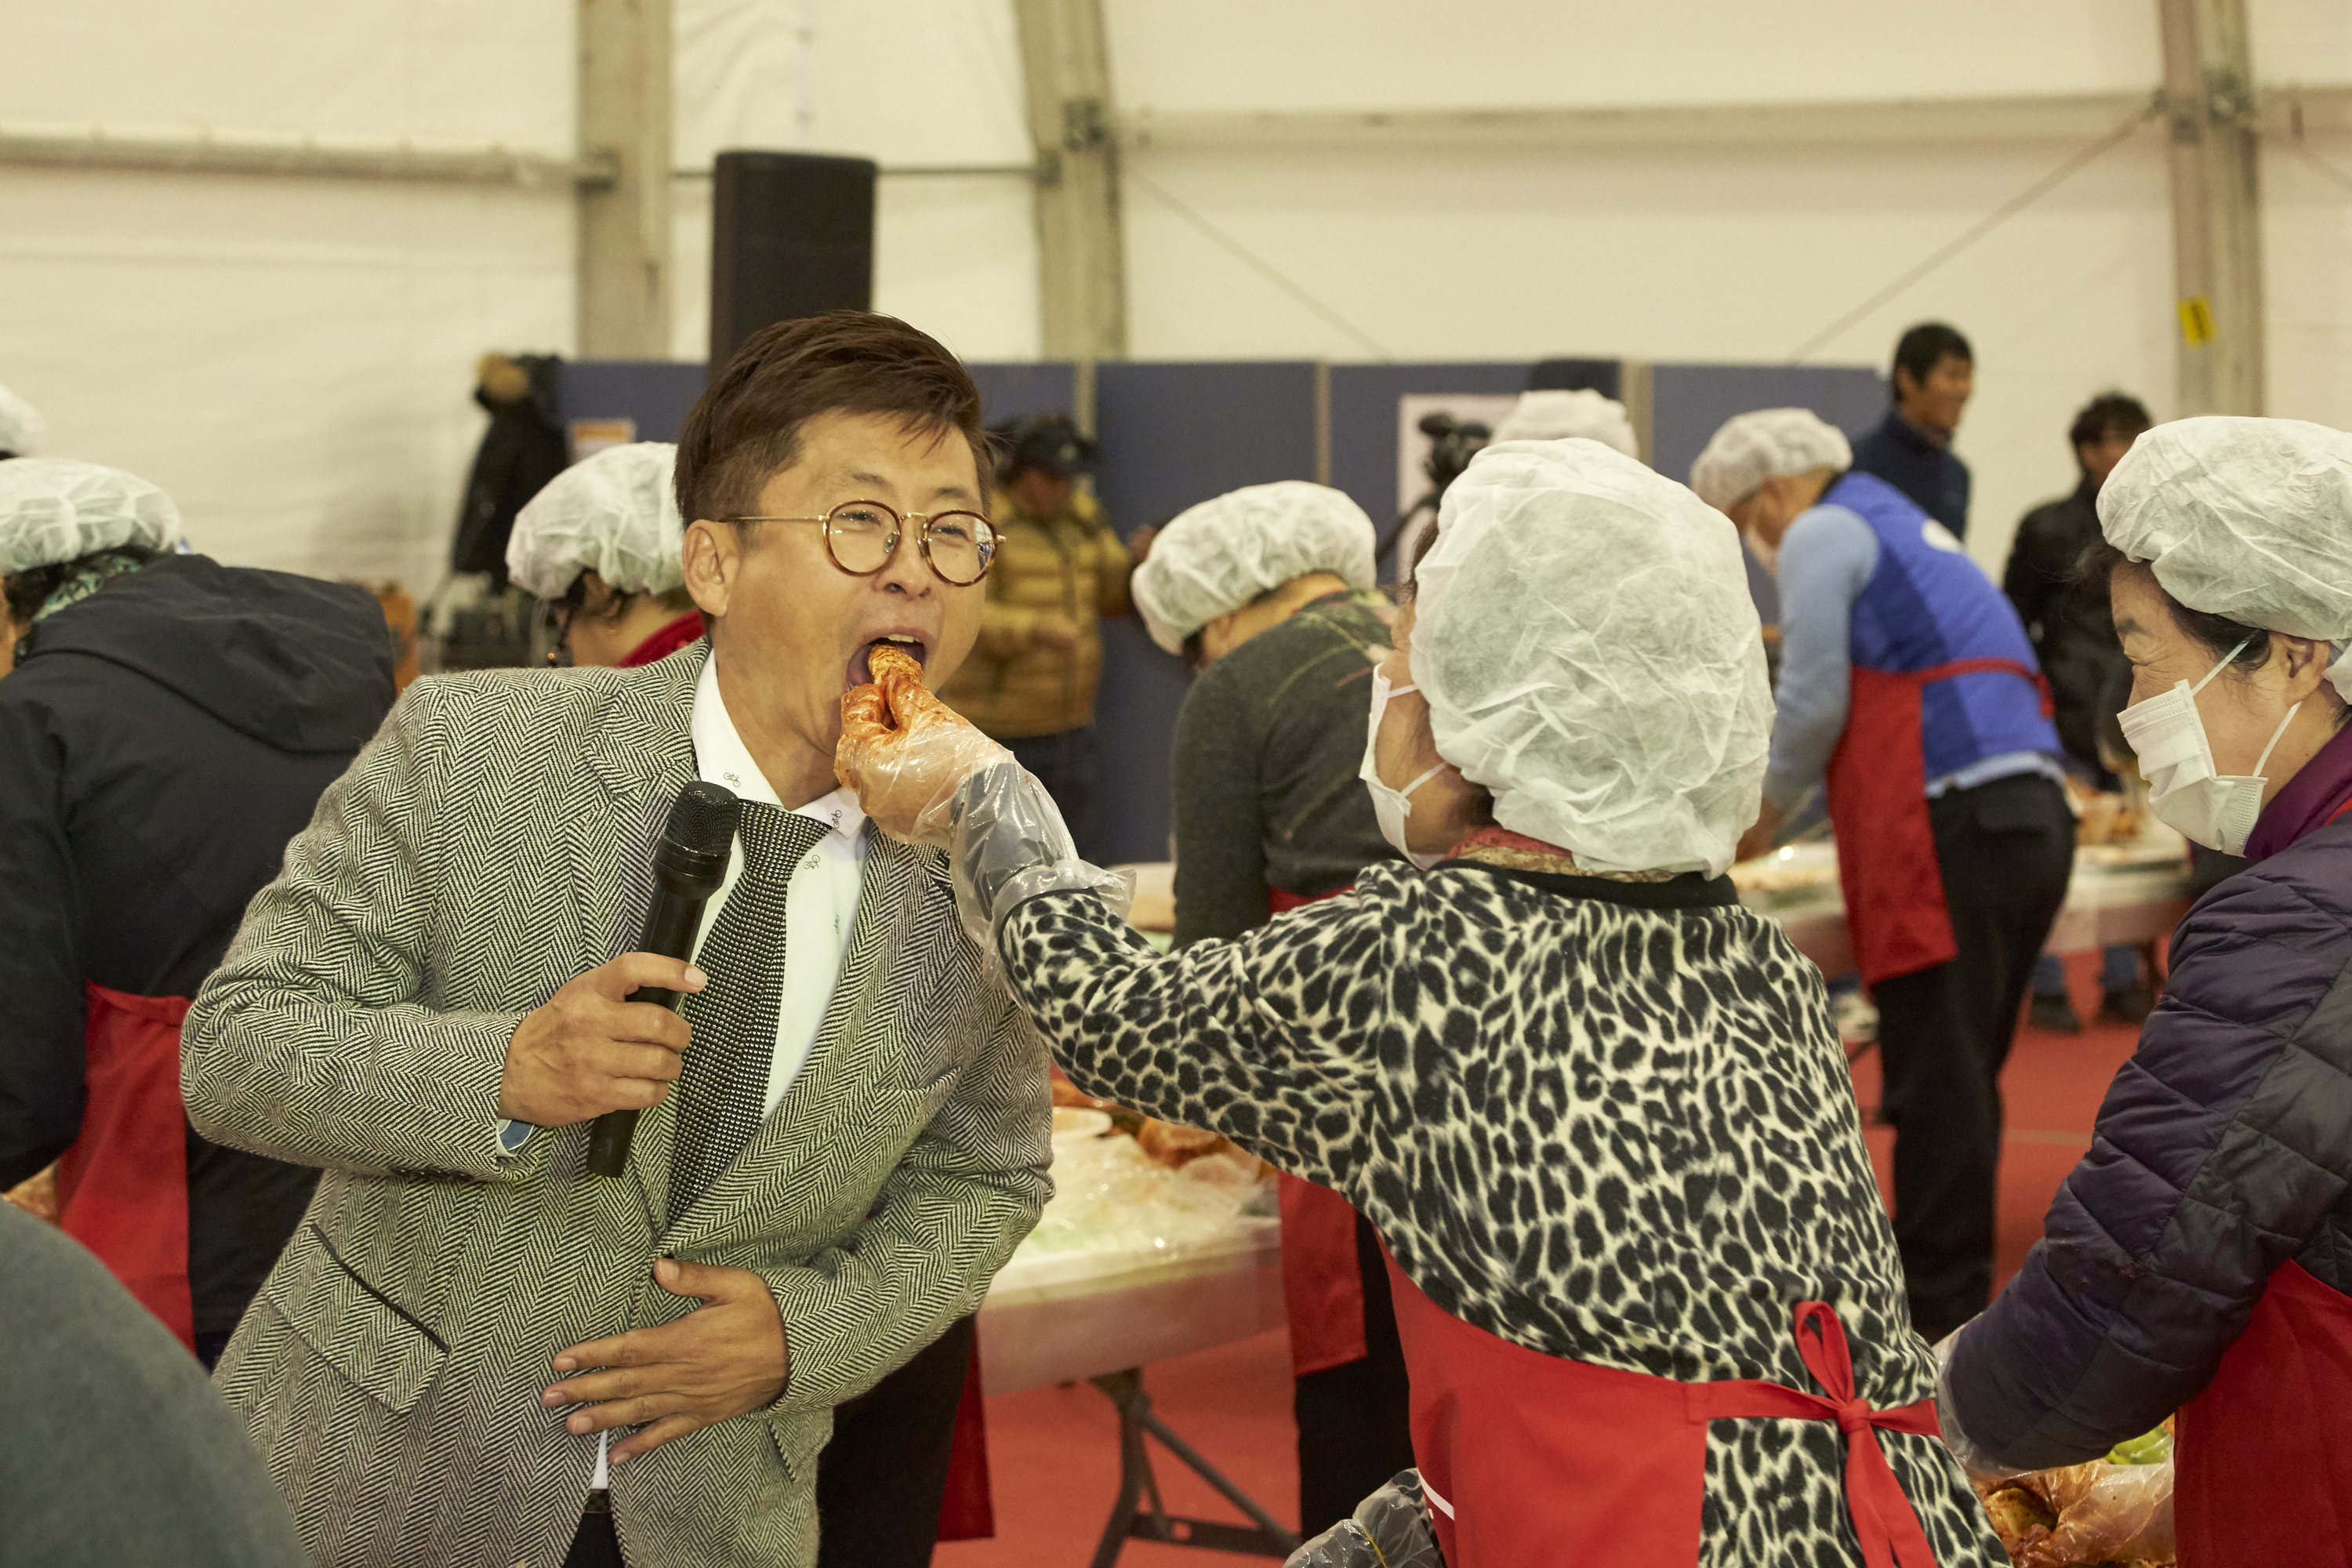 2016년 광주세계김치축제 행사 사진